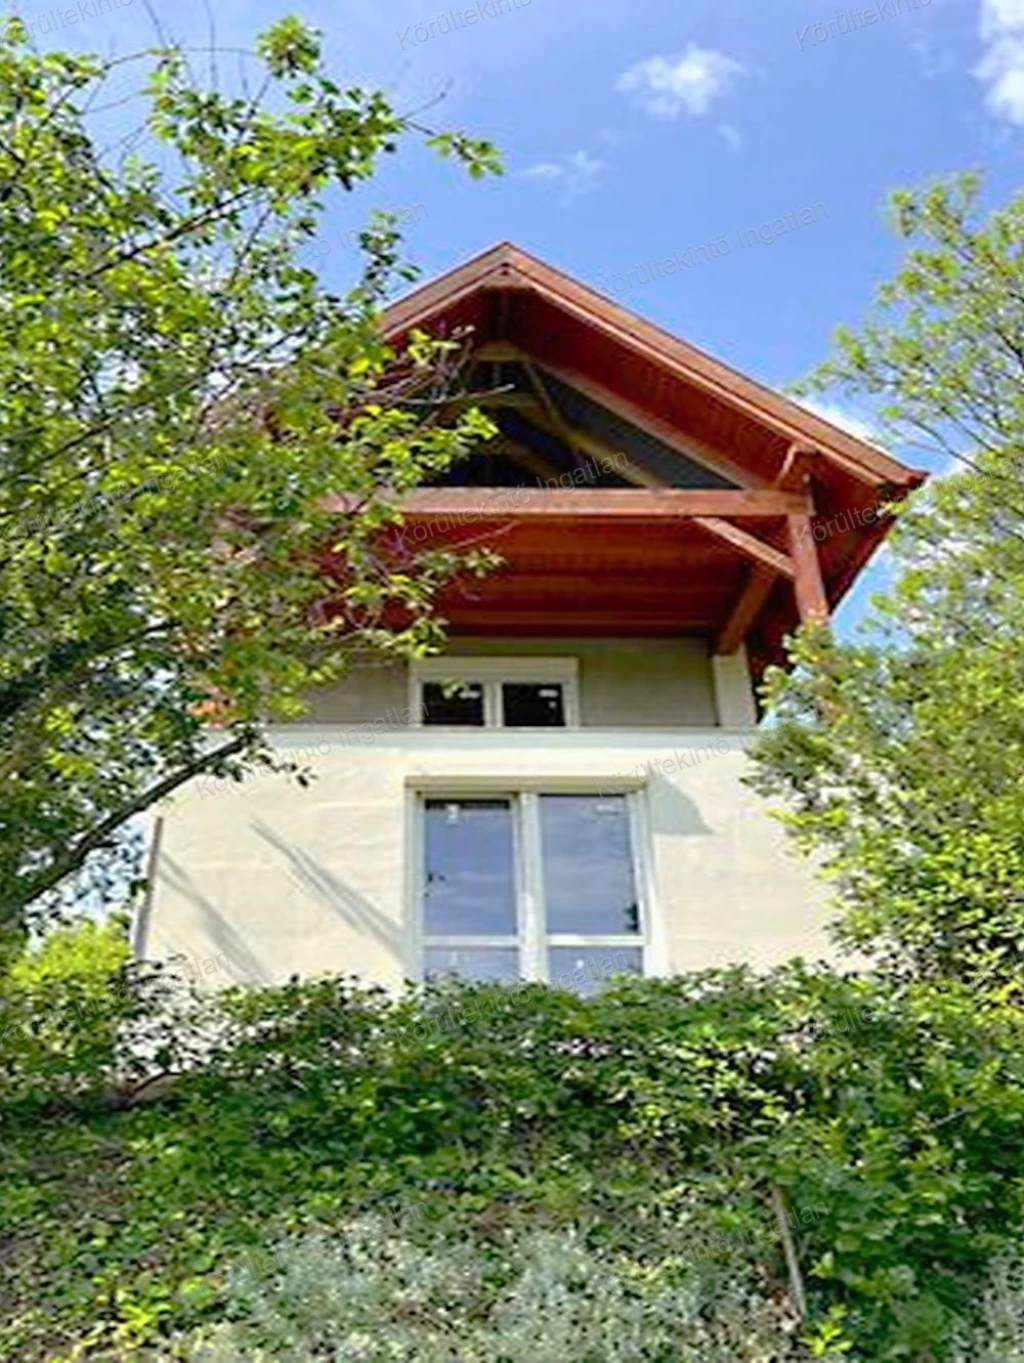 For sale holiday house, summer cottage, Sukoró, Üdülőfalu, Körmös utca